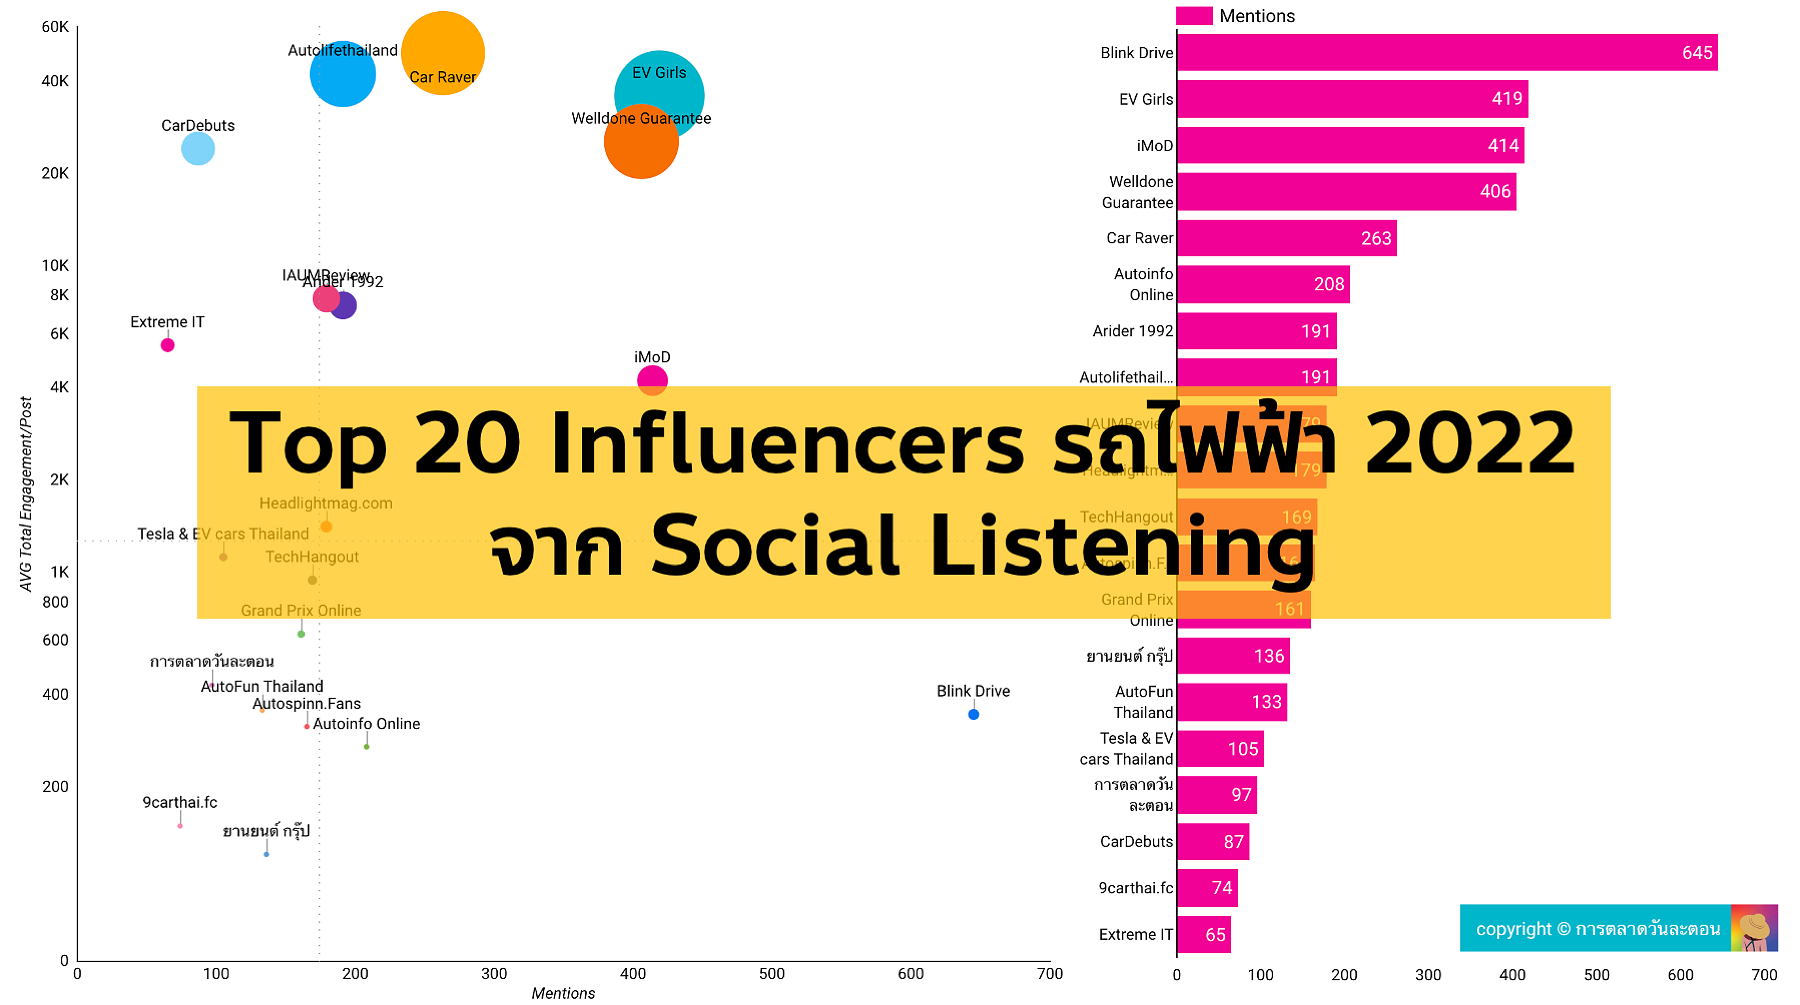 รวม Top 10 Influencers รถยนต์ไฟฟ้าของไทย 2022 จากการใช้ Social Listening Tool ดู Data สองมิติทั้งจำนวน Mentions และปริมาณ Engagement